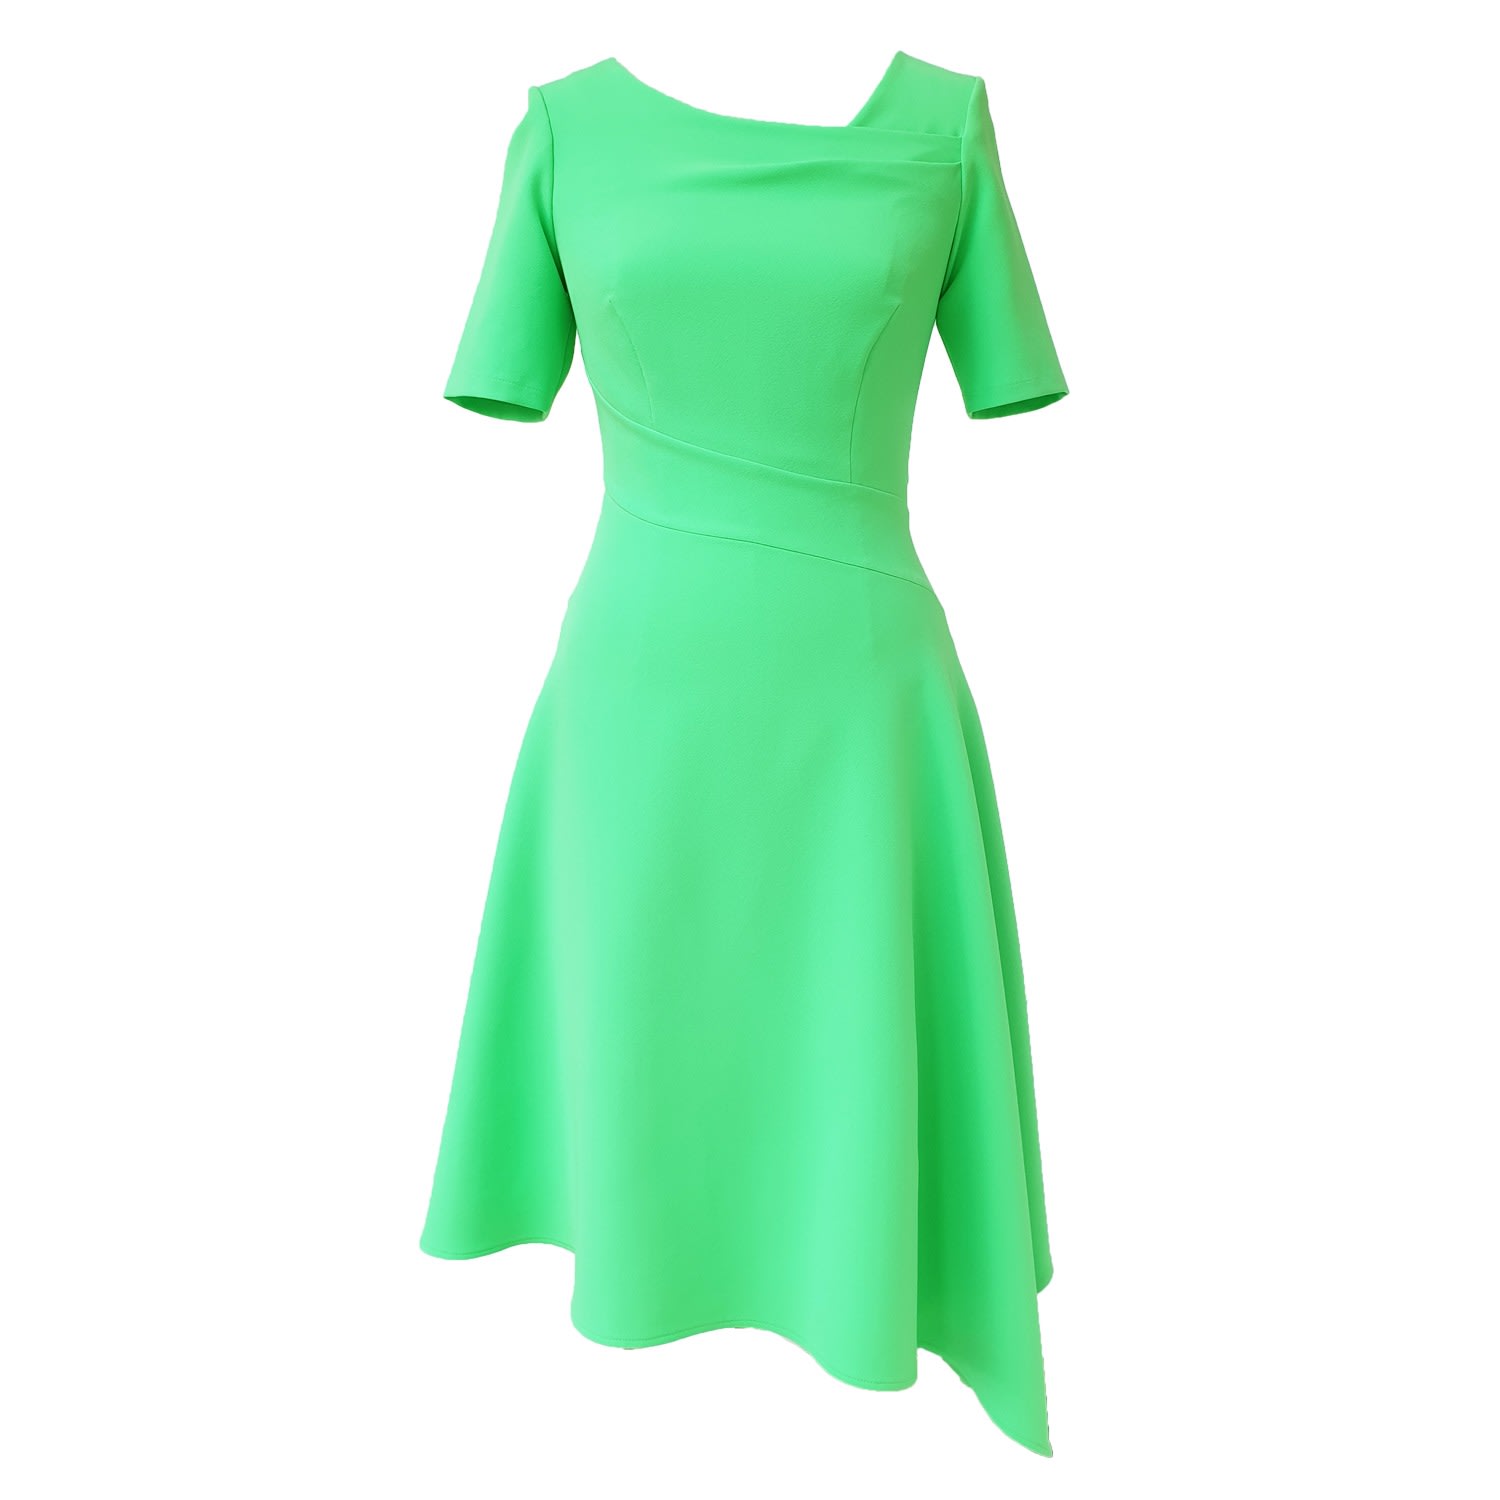 Mellaris Women's Audrey Green Dress